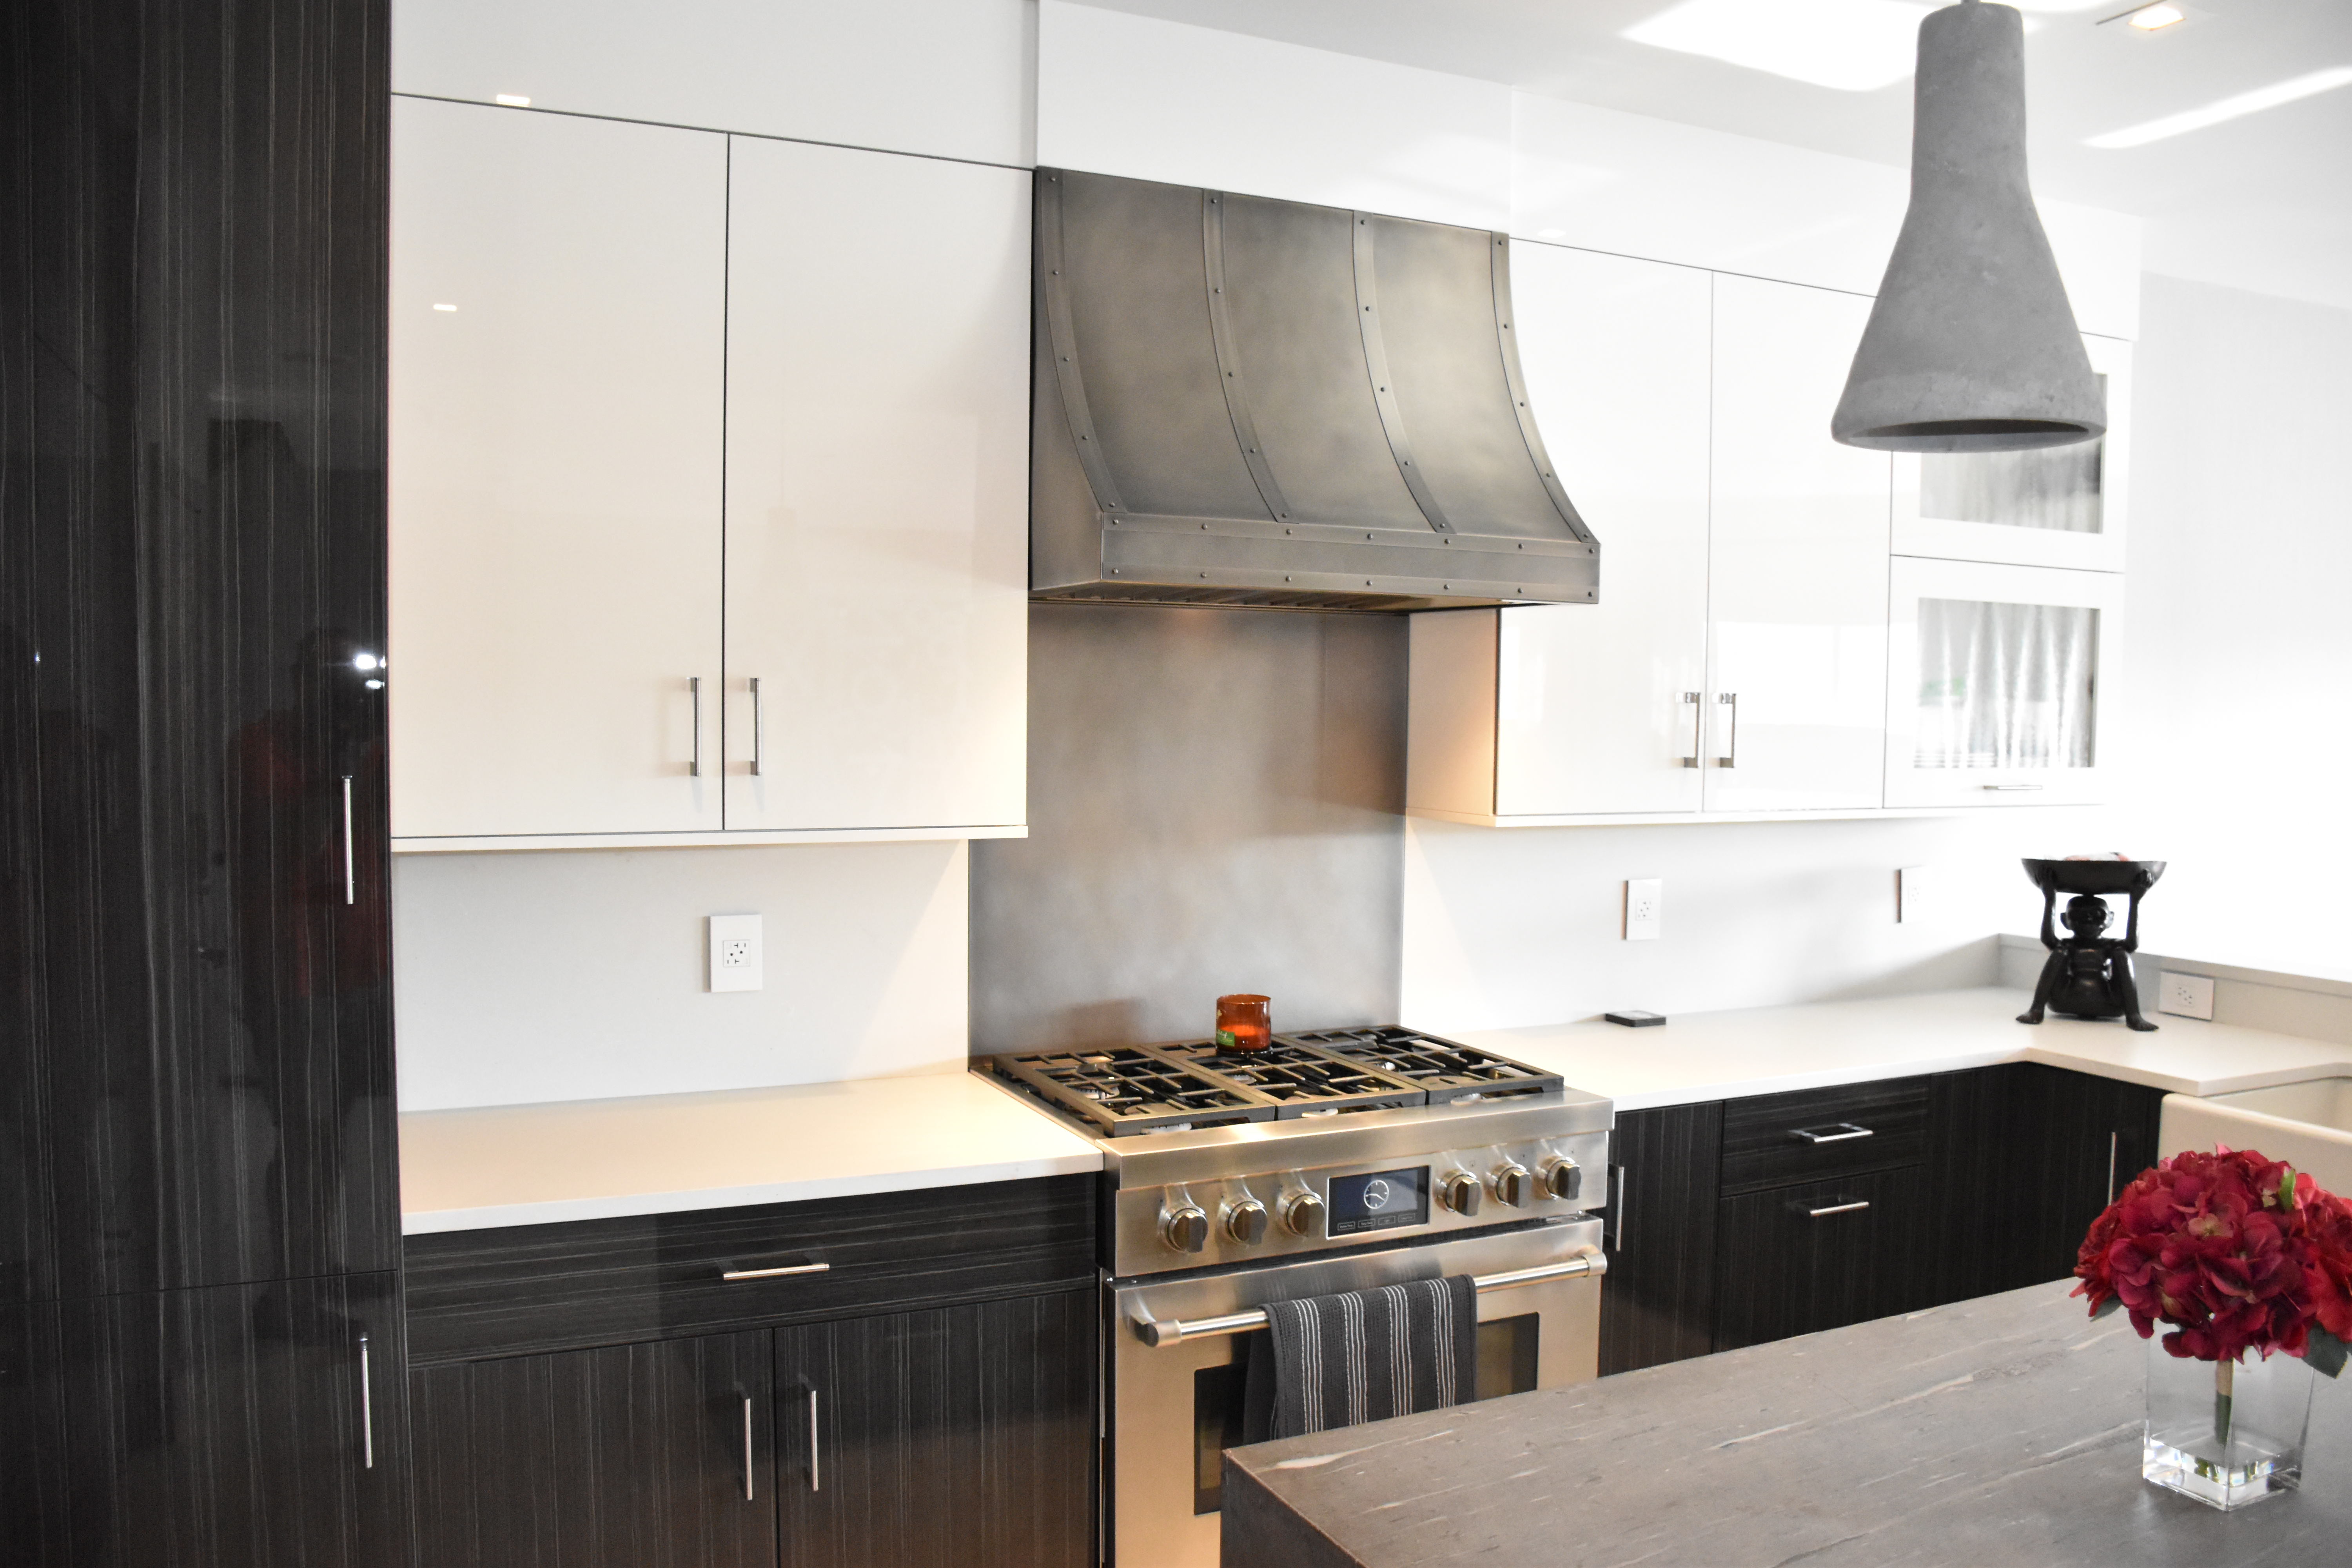 range hood luxxury kitchen design